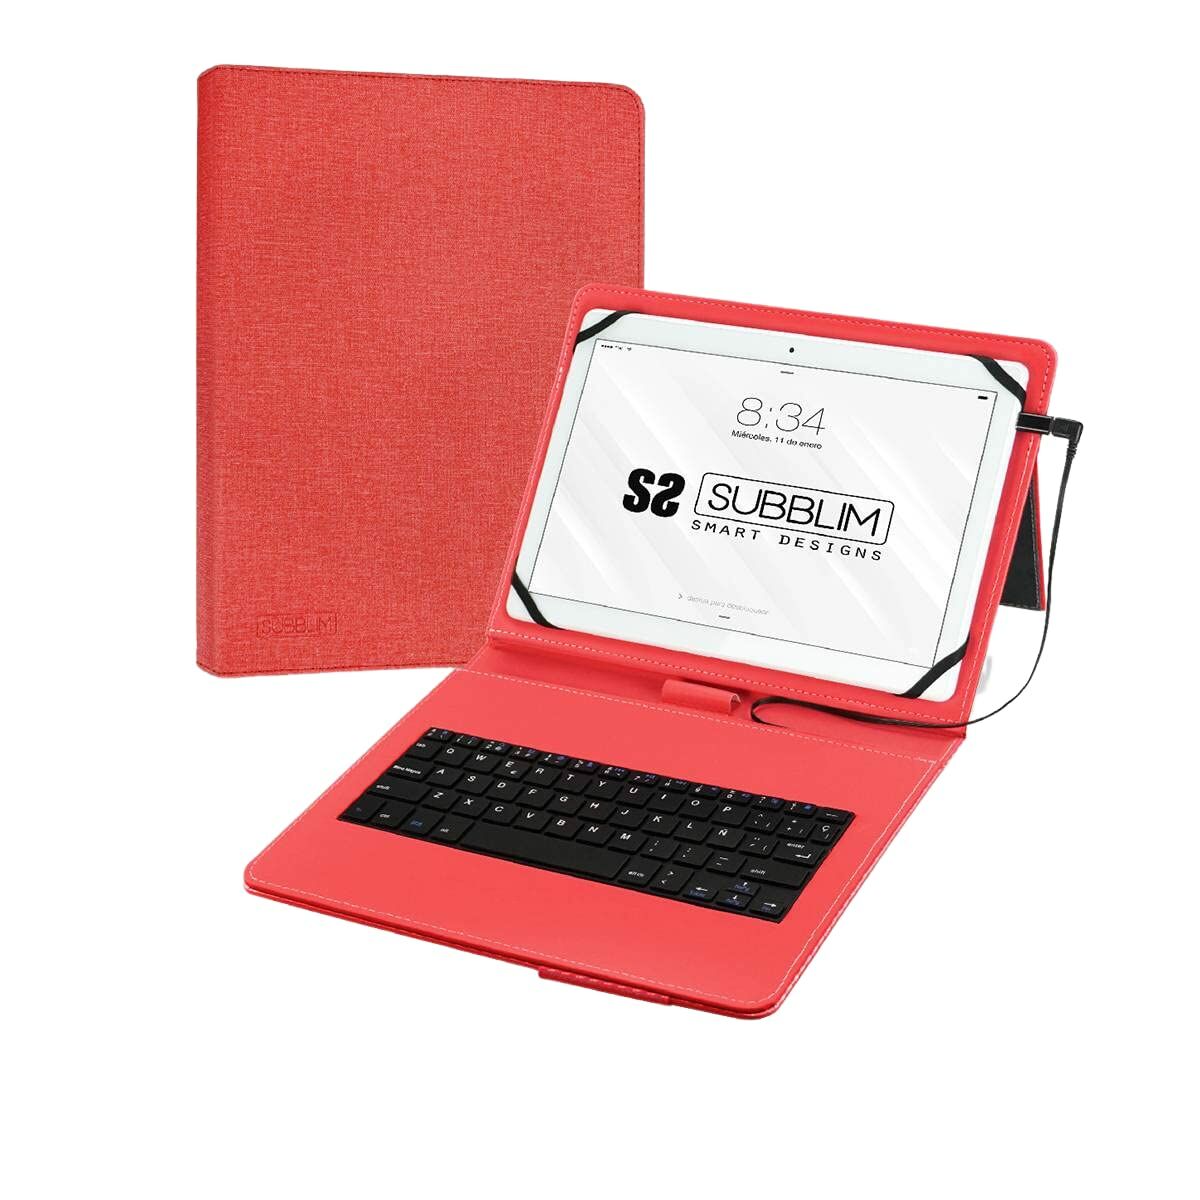 Subblim SUB-KT1-USB002 10,1-Zoll-Tablet- und Tastaturabdeckung, rot, Spanisch, Qwerty, Spanisch